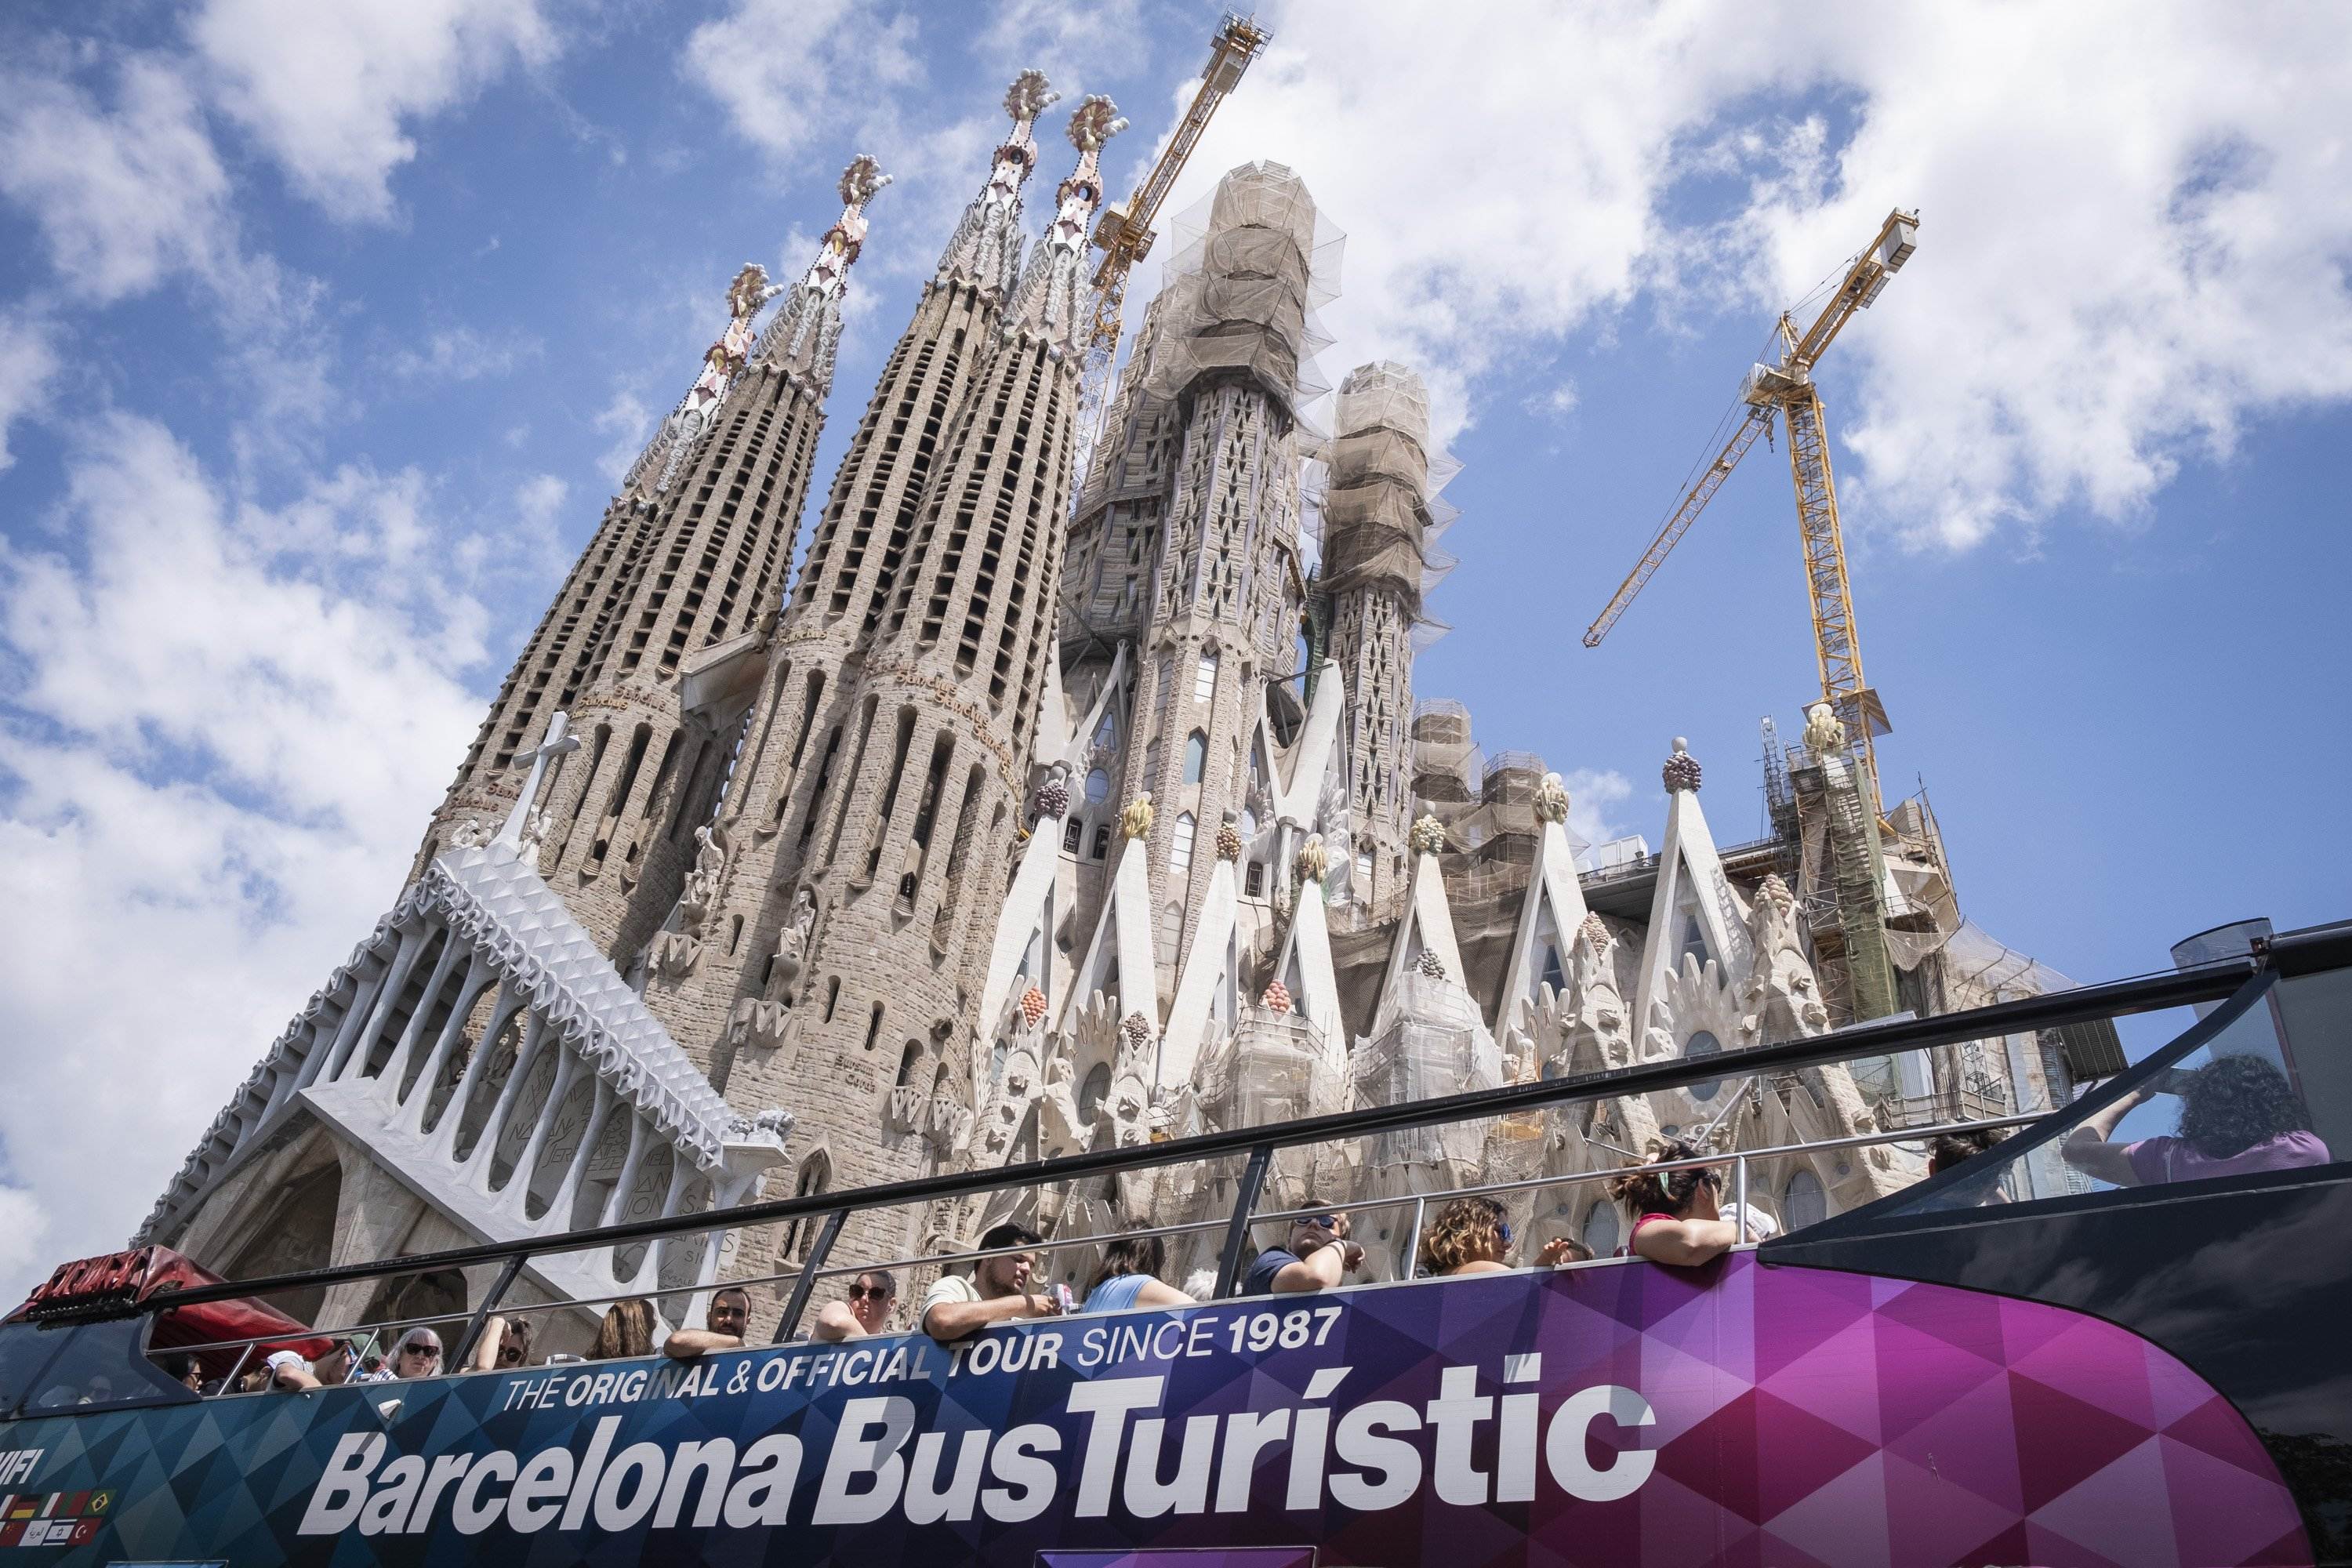 Barcelona elimina siete paradas de bus turístico alrededor de la Sagrada Familia por las quejas de vecinos